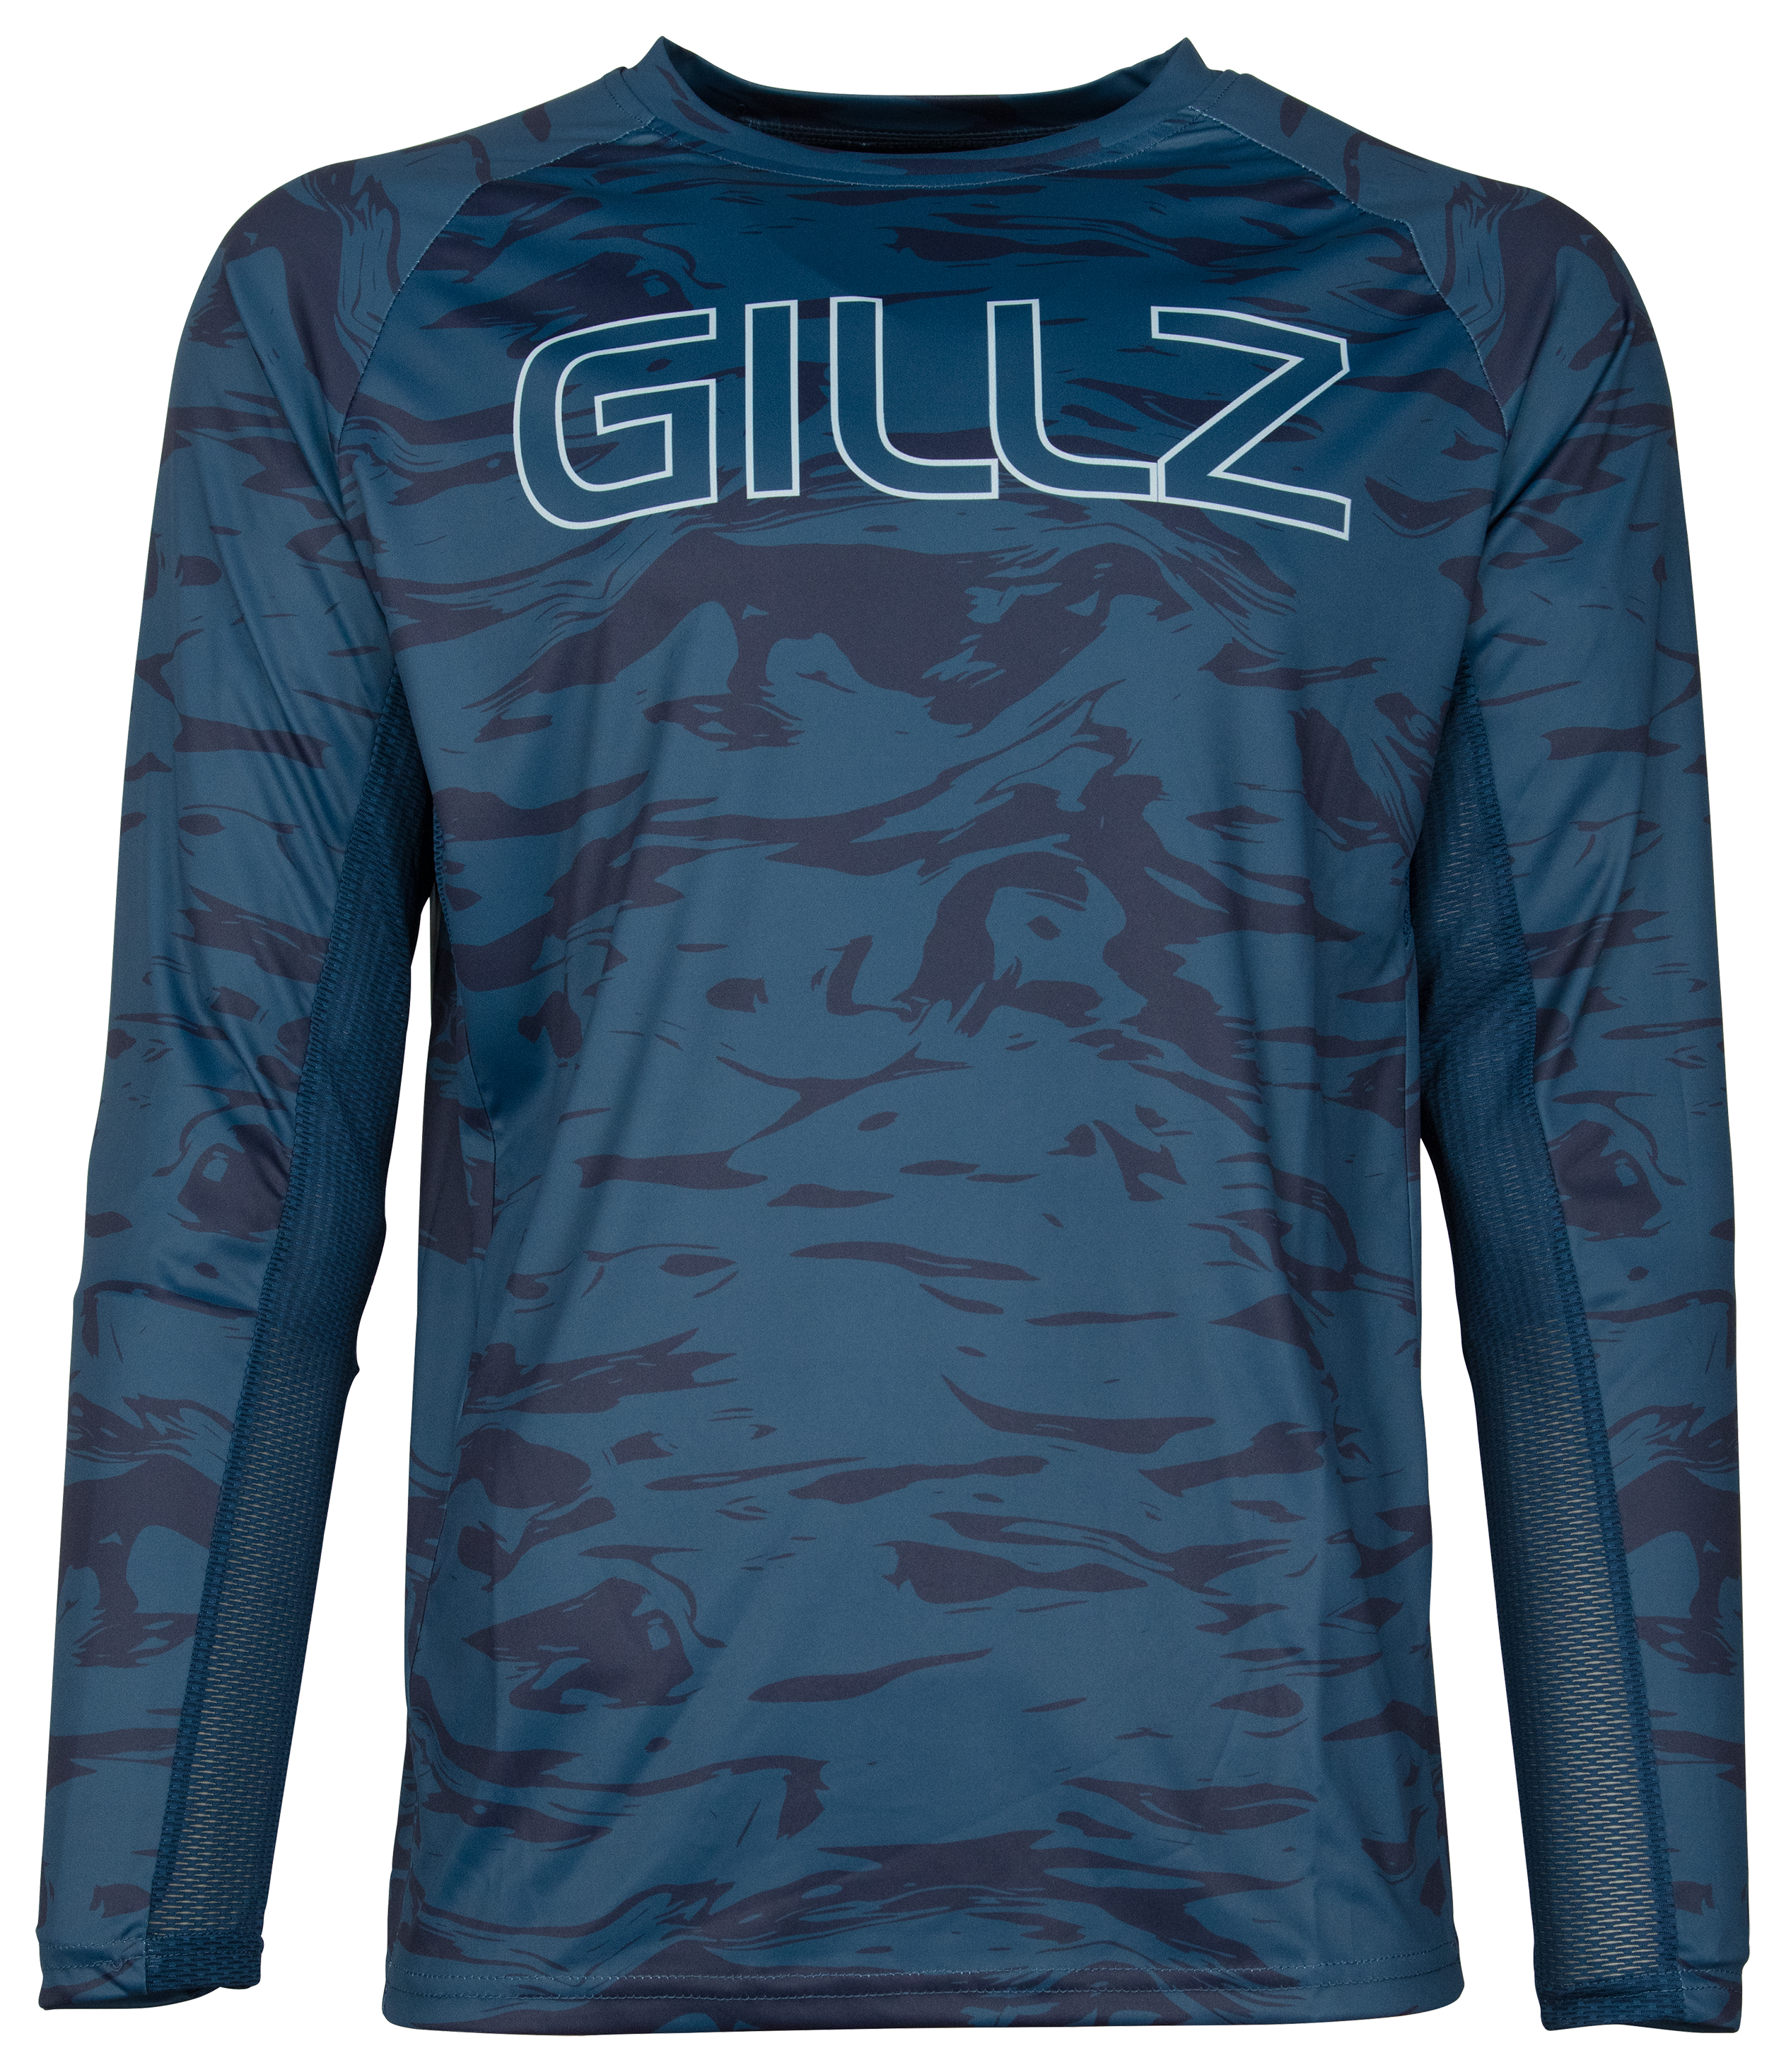 Gillz Tournament Series Long-Sleeve Shirt for Men